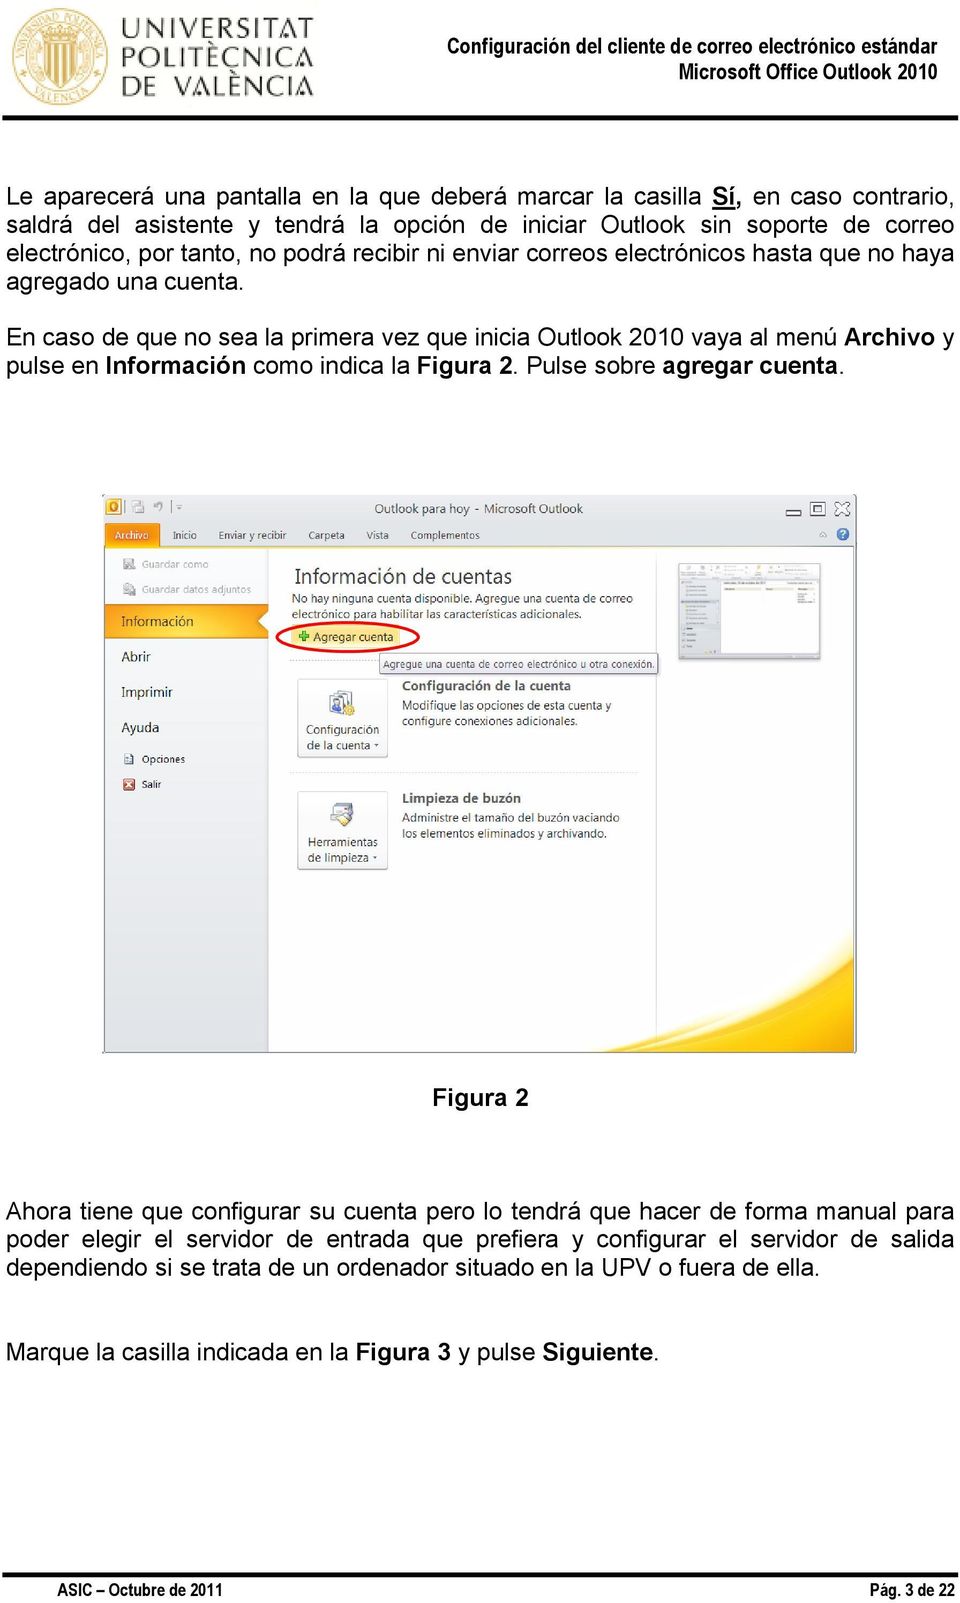 En caso de que no sea la primera vez que inicia Outlook 2010 vaya al menú Archivo y pulse en Información como indica la Figura 2. Pulse sobre agregar cuenta.